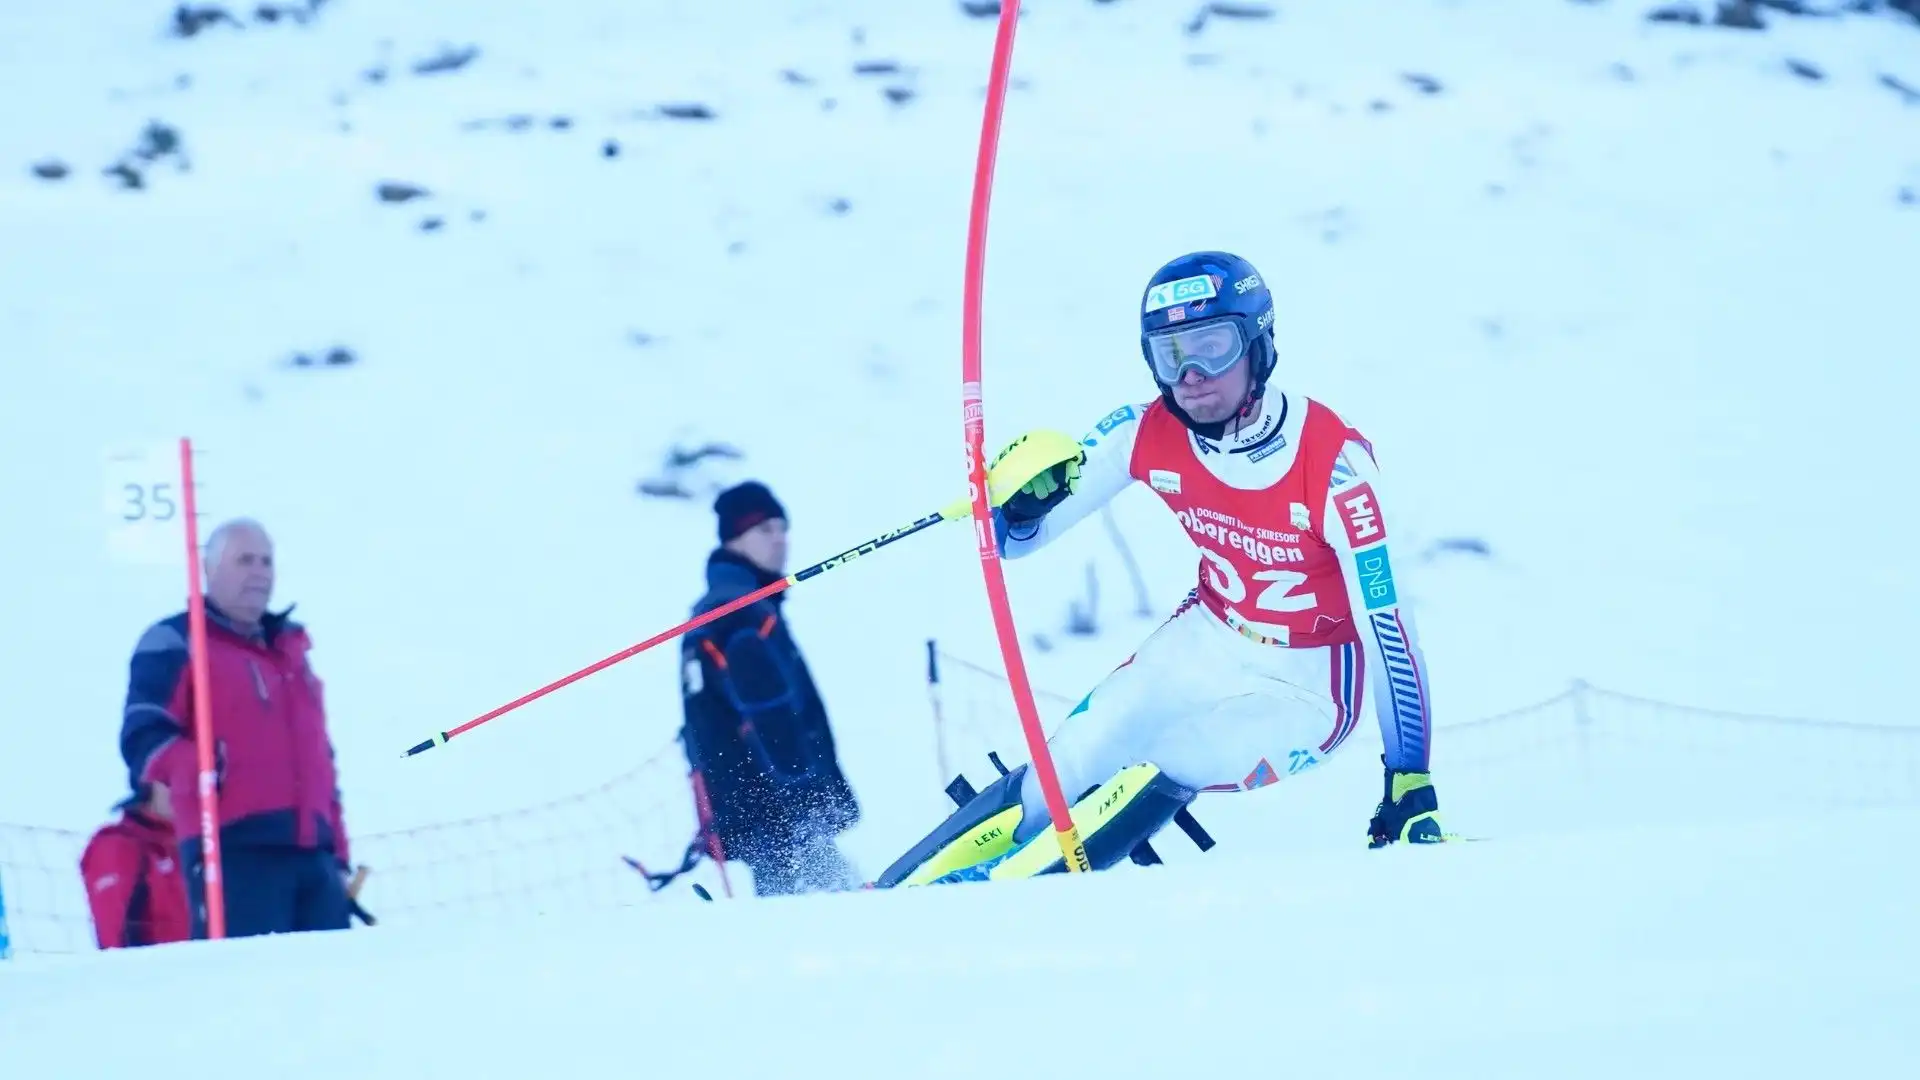 Su tutti l'austriaco Marcel Hirscher, lo sciatore più vincente di tutti i tempi